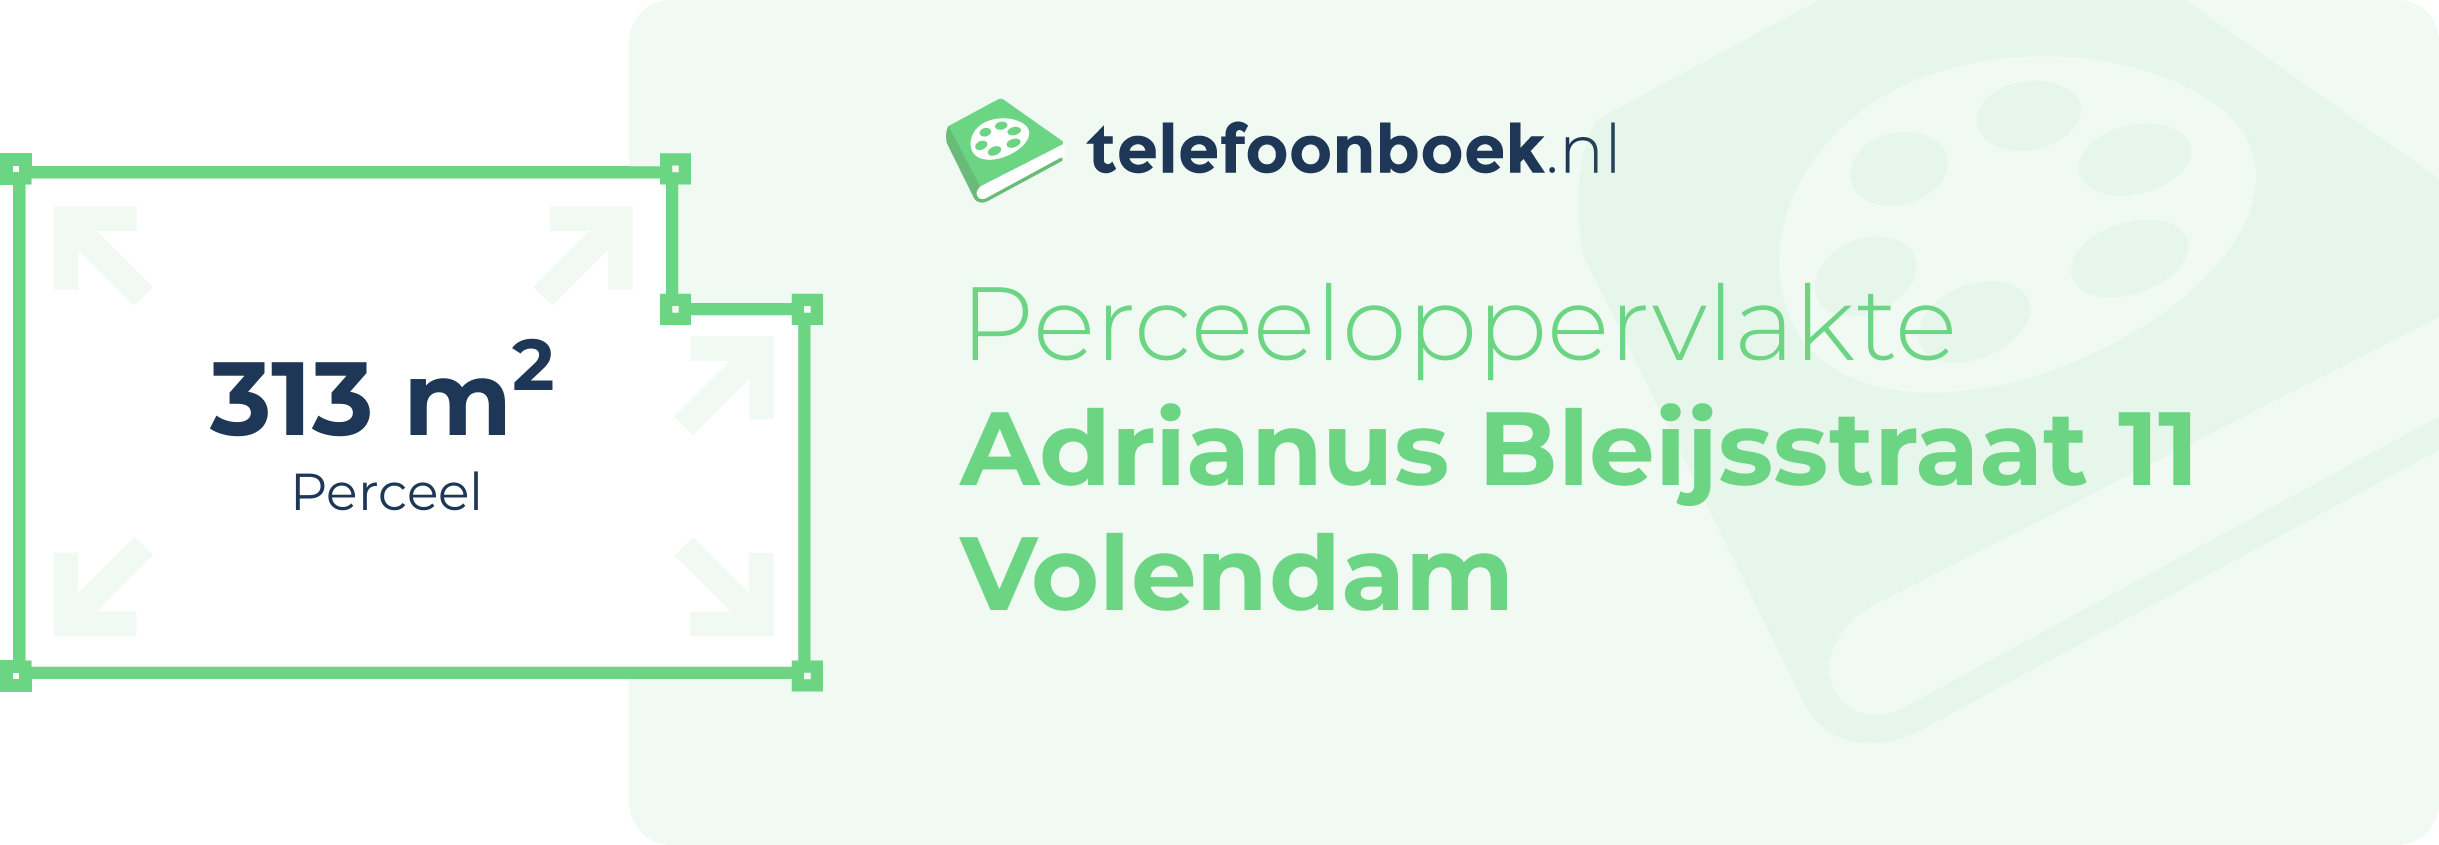 Perceeloppervlakte Adrianus Bleijsstraat 11 Volendam